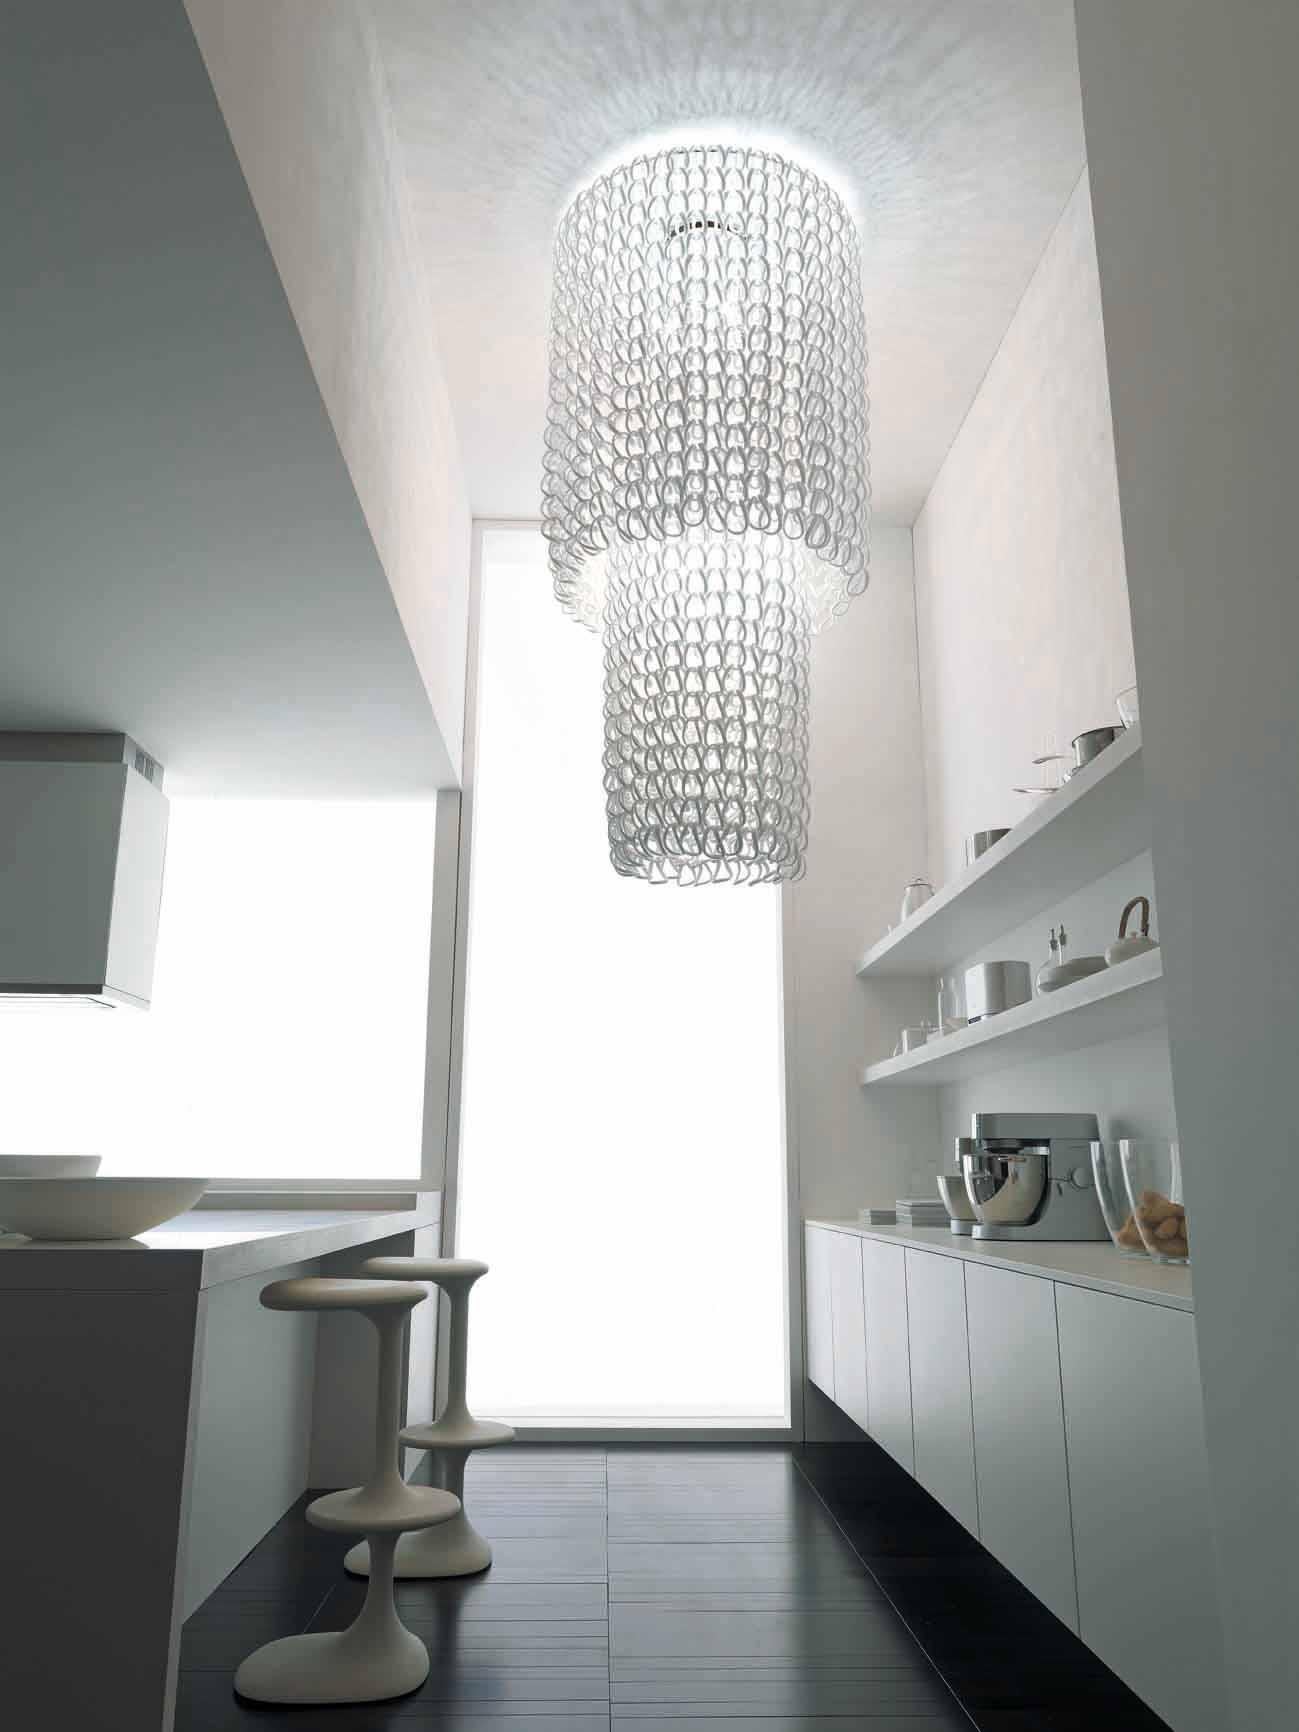 La collection Giogali est un système d'éclairage décoratif basé sur un seul élément : le lien en verre fait à la main. Lustre Cascade en cristal. Pièces métalliques chromées. E26 éclairage.
 